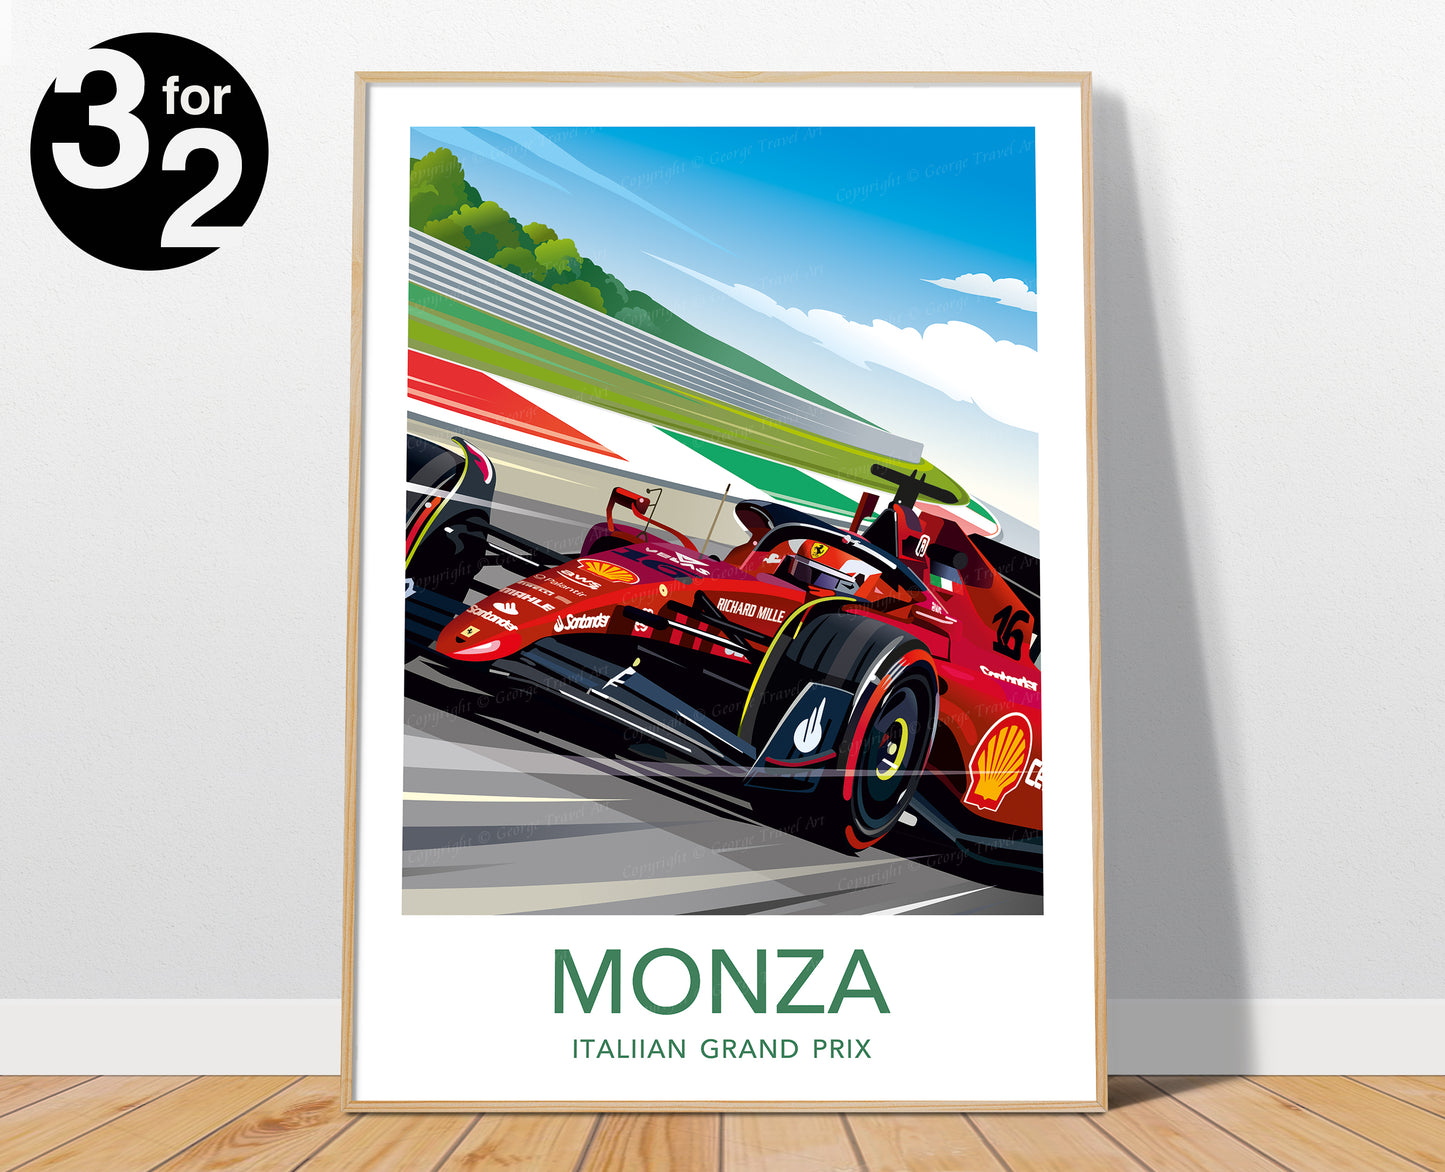 Monza F1 Print / Ferrari F1 Poster / Charles Leclerc / F1 Wall Art / Italian Grand Prix